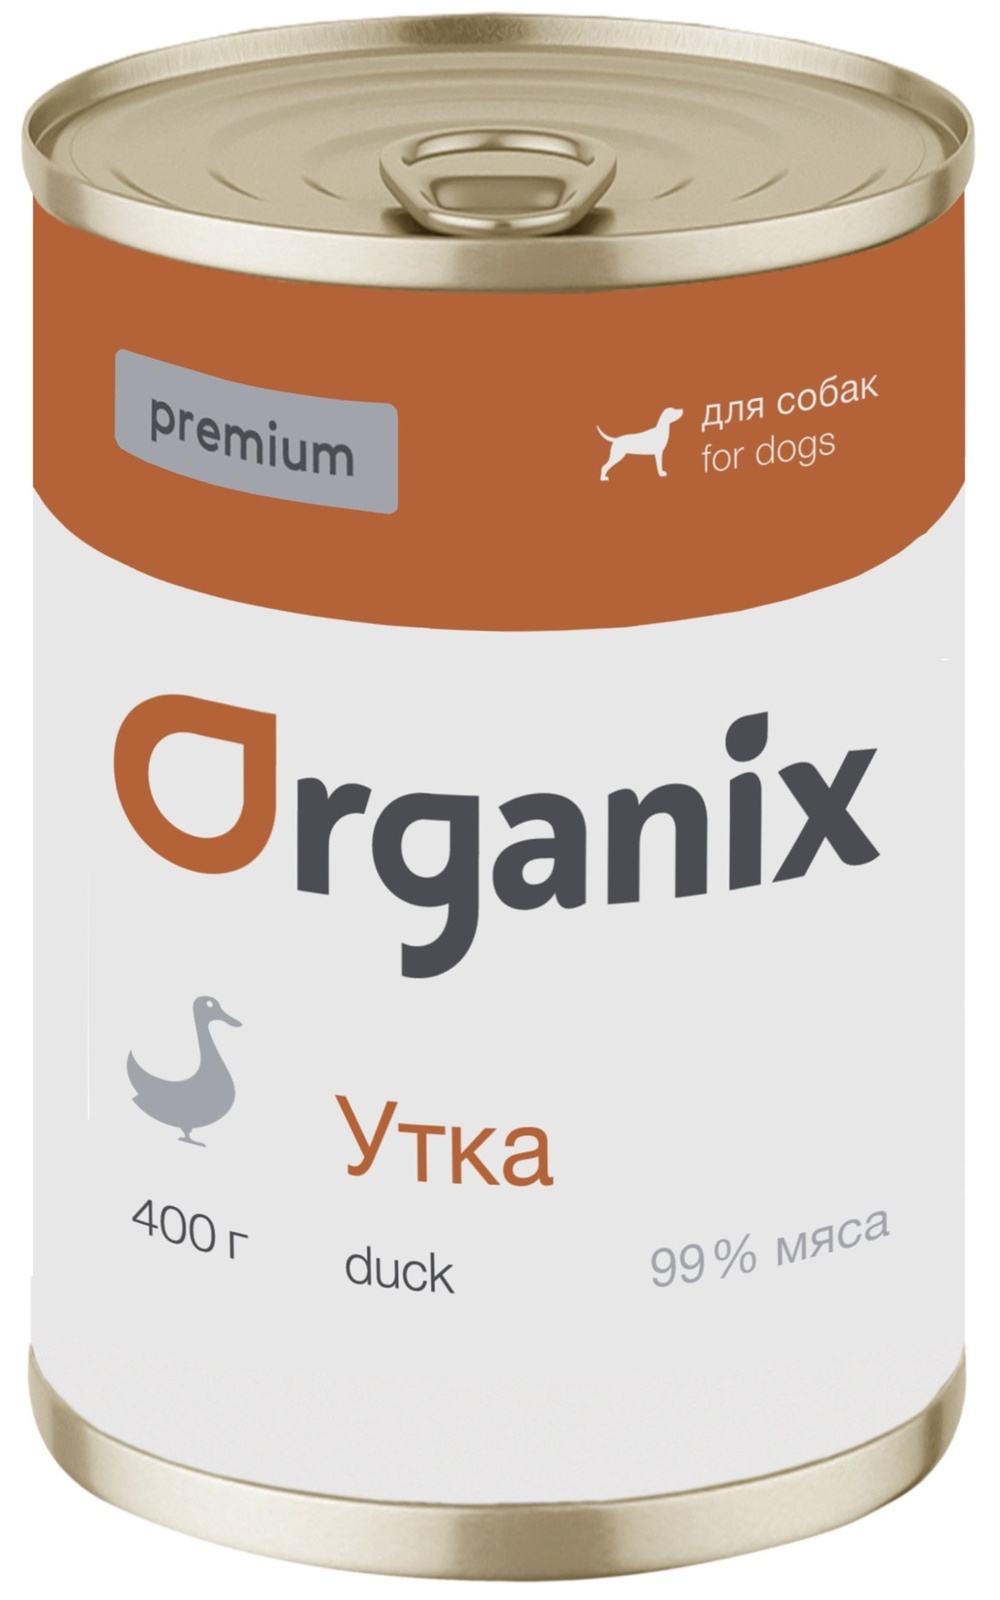 Organix консервы Organix монобелковые премиум консервы для собак, с уткой (100 г) organix консервы organix монобелковые премиум консервы для собак с гусем 400 г